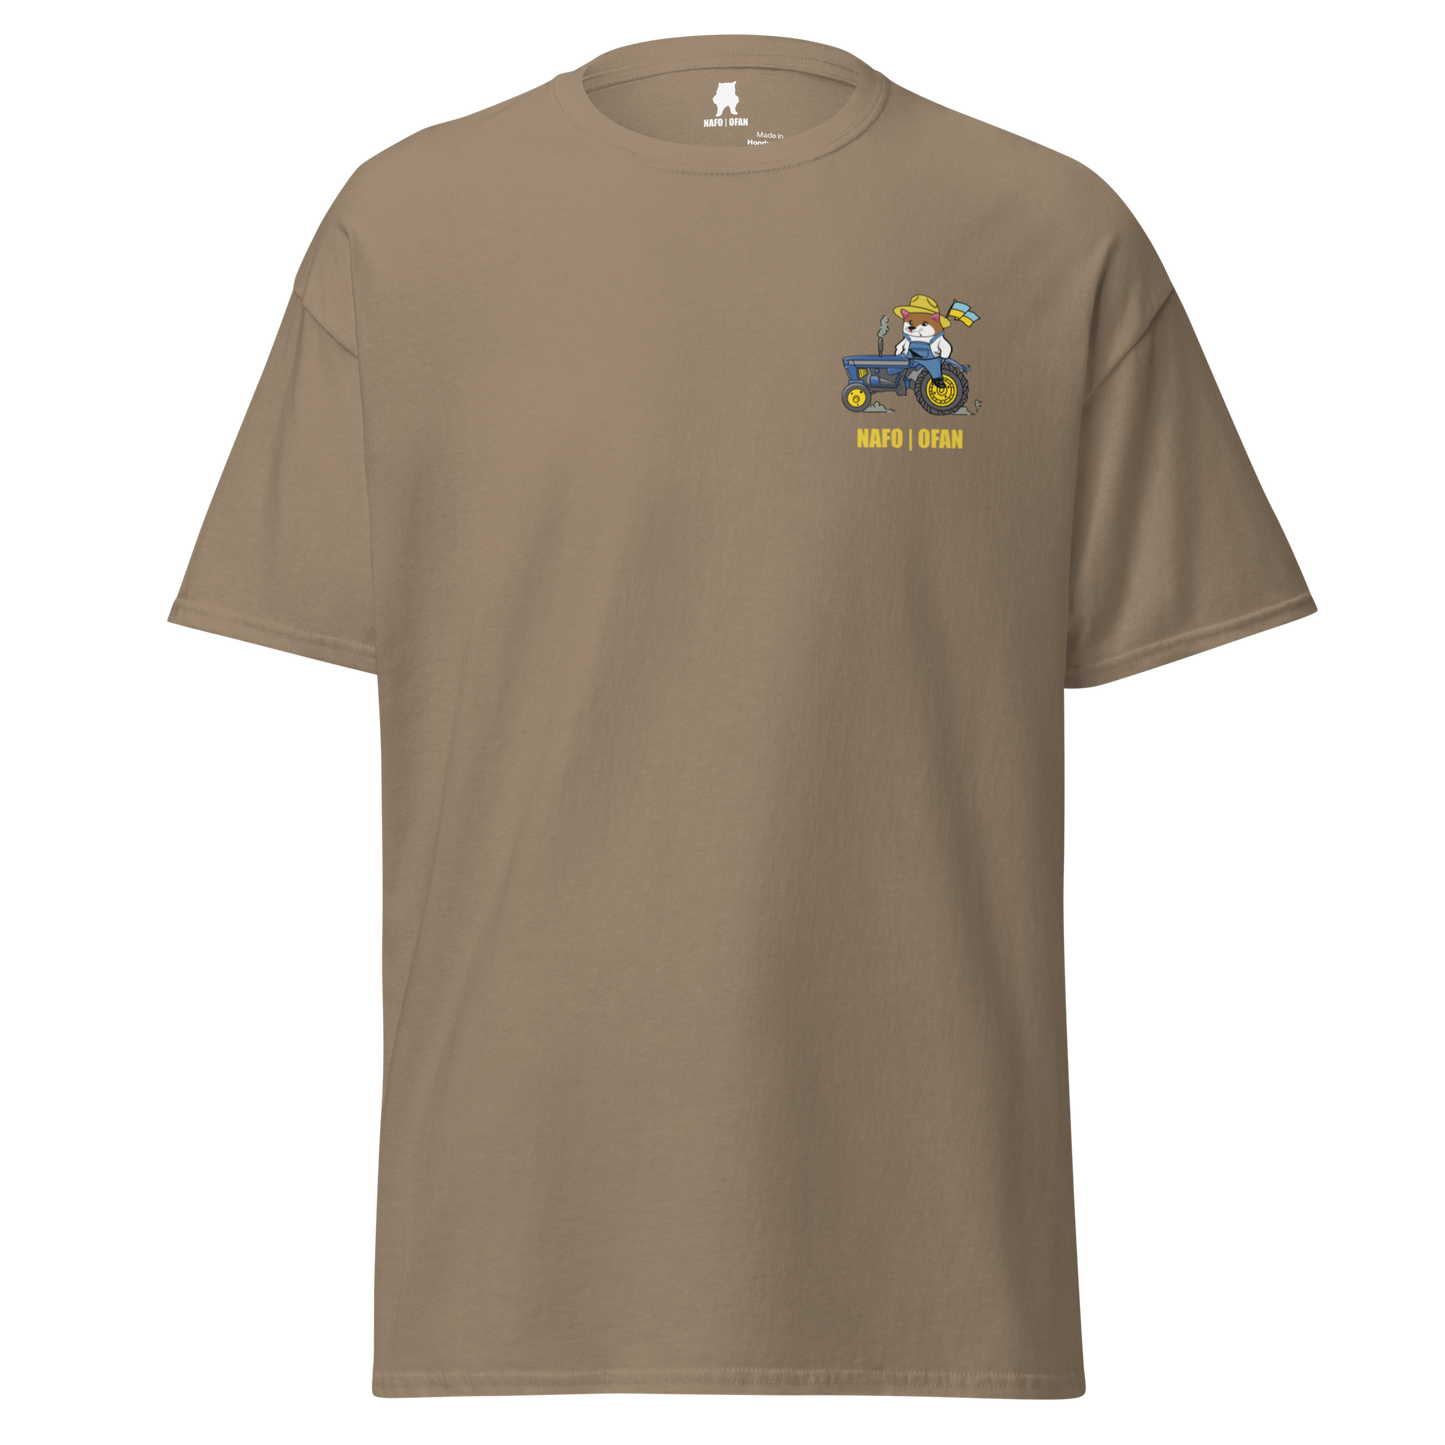 NAFO 69th Repo Brigade Military Style T-Shirt